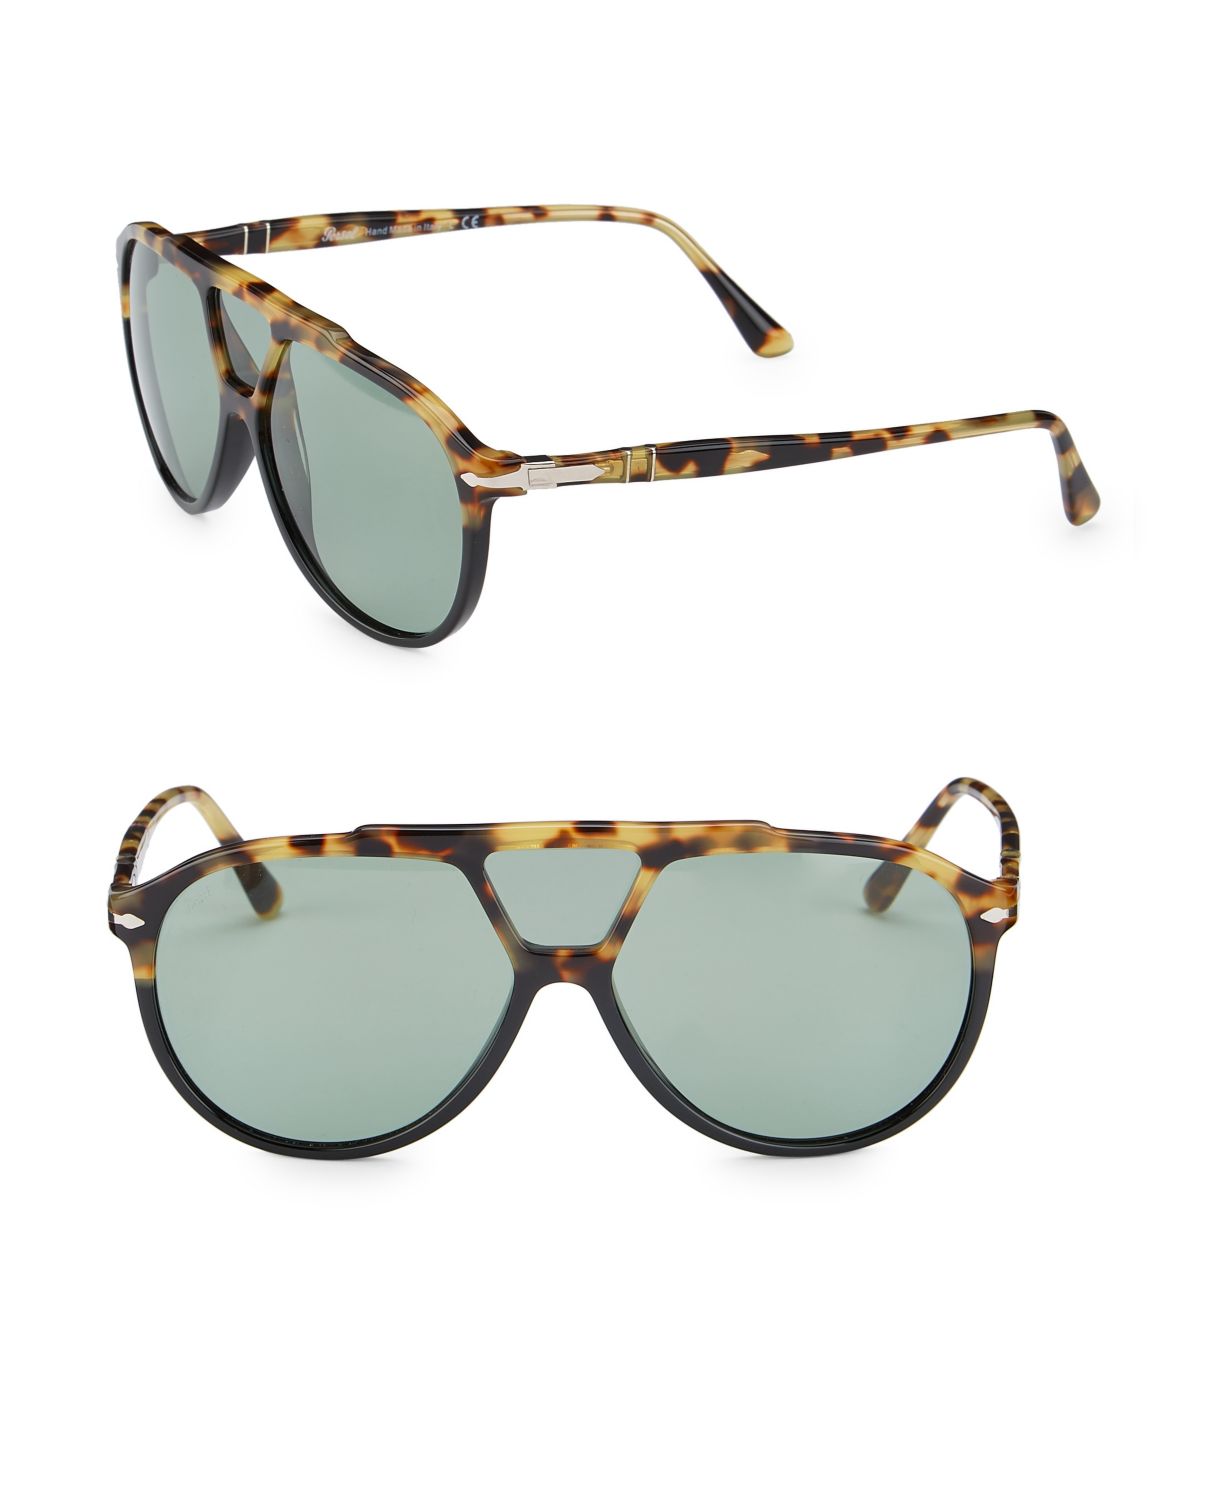 Солнцезащитные очки-авиаторы черепаховой расцветки 59 мм Persol